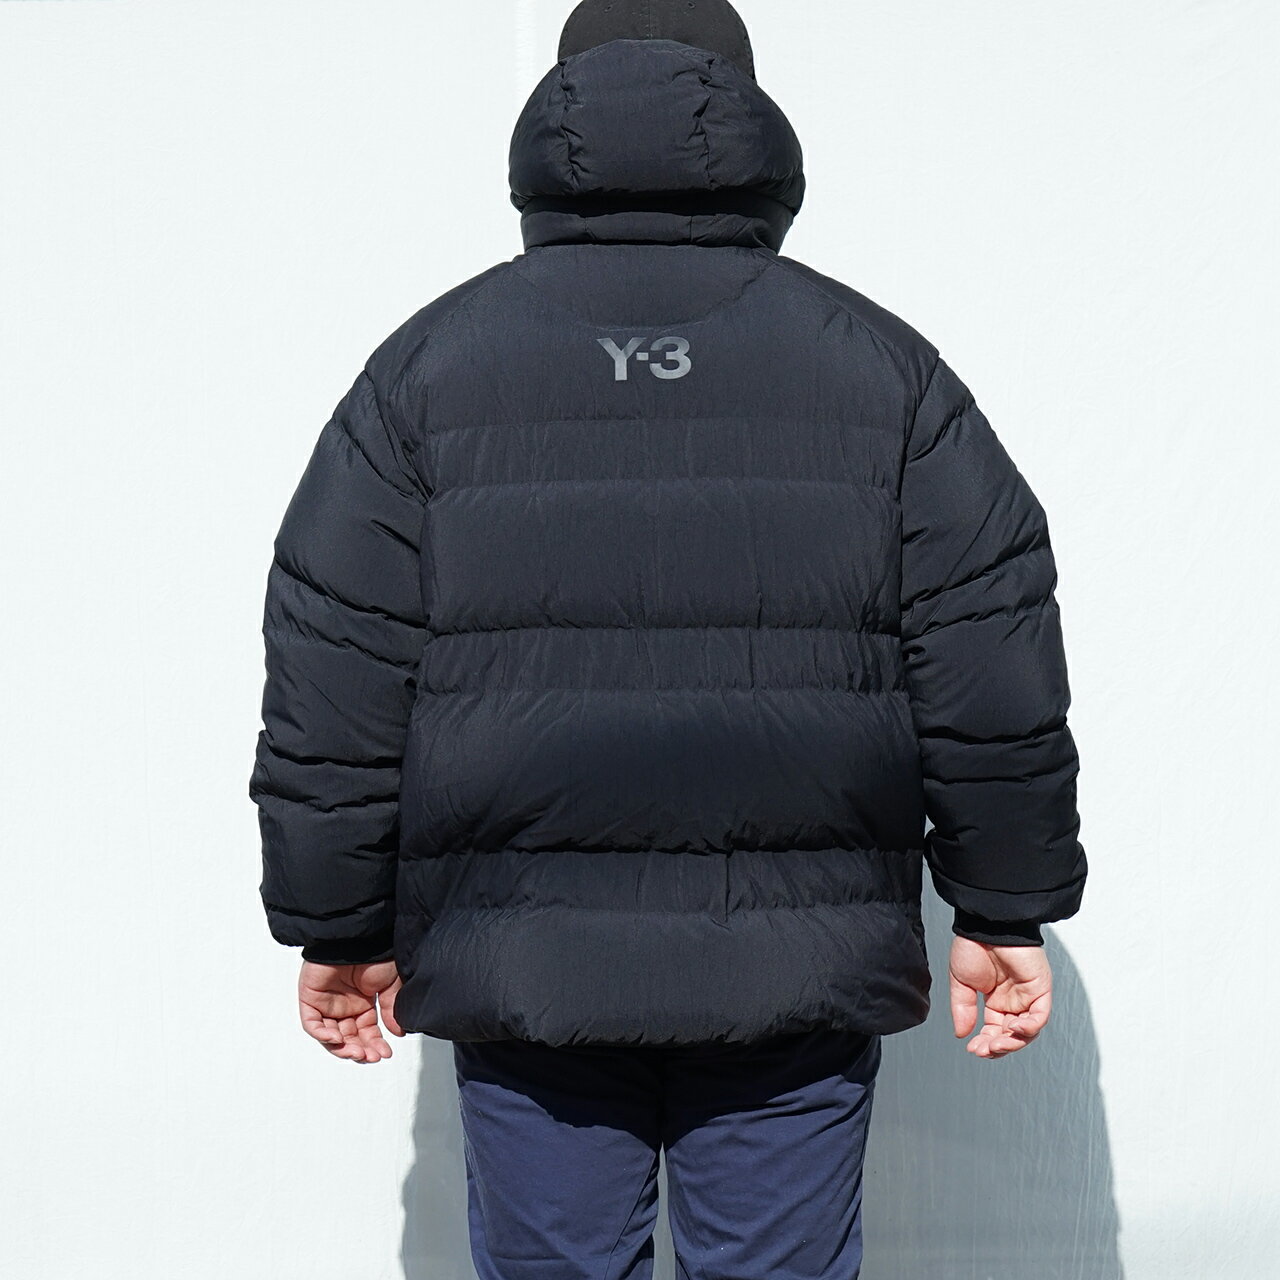 Y-3 ワイスリー HA5556 Wスクエアポケット ダウンジャケット メンズ Yohji Yamamoto ヨージヤマモト ダウン ジャケット アウター adidas アディダス シンプル 防寒 大きいサイズ XL XXL